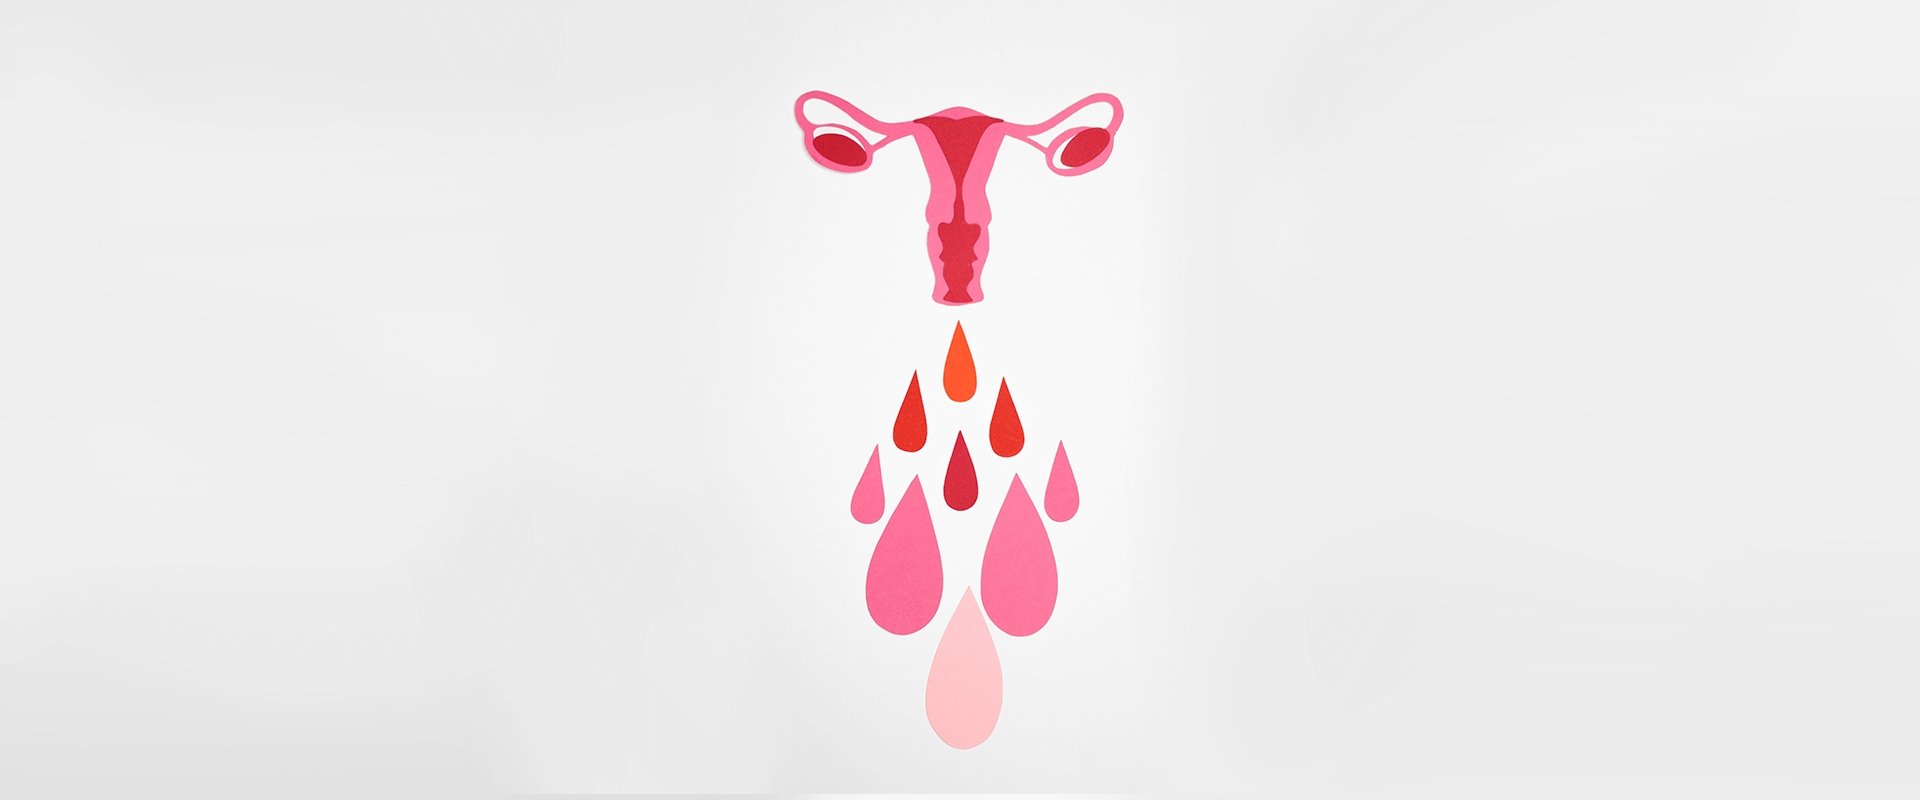 Me ajudeeem, corrimento rosa, 2 dias antes da menstruação?, menstruação rosa